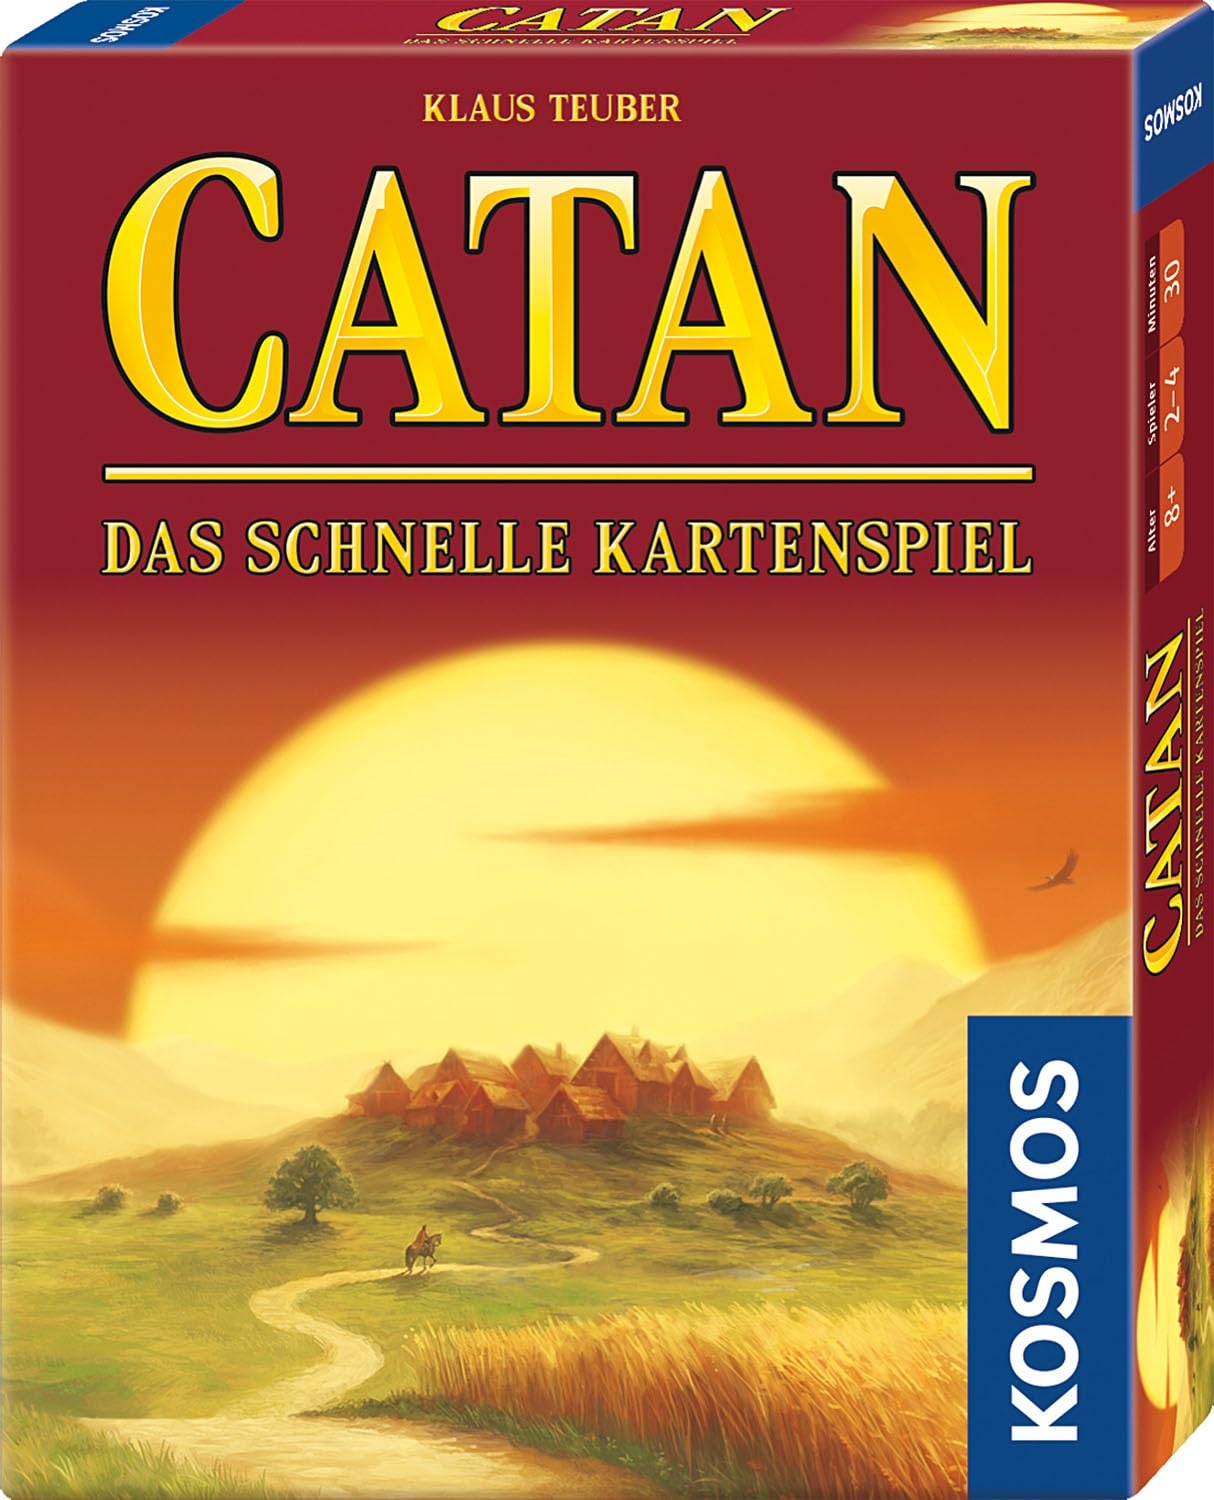 KOSMOS 740221 Catan - Das schnelle Kartenspiel für 2-4 Personen ab 10 Jahren, Siedler von Catan Kartenspiel